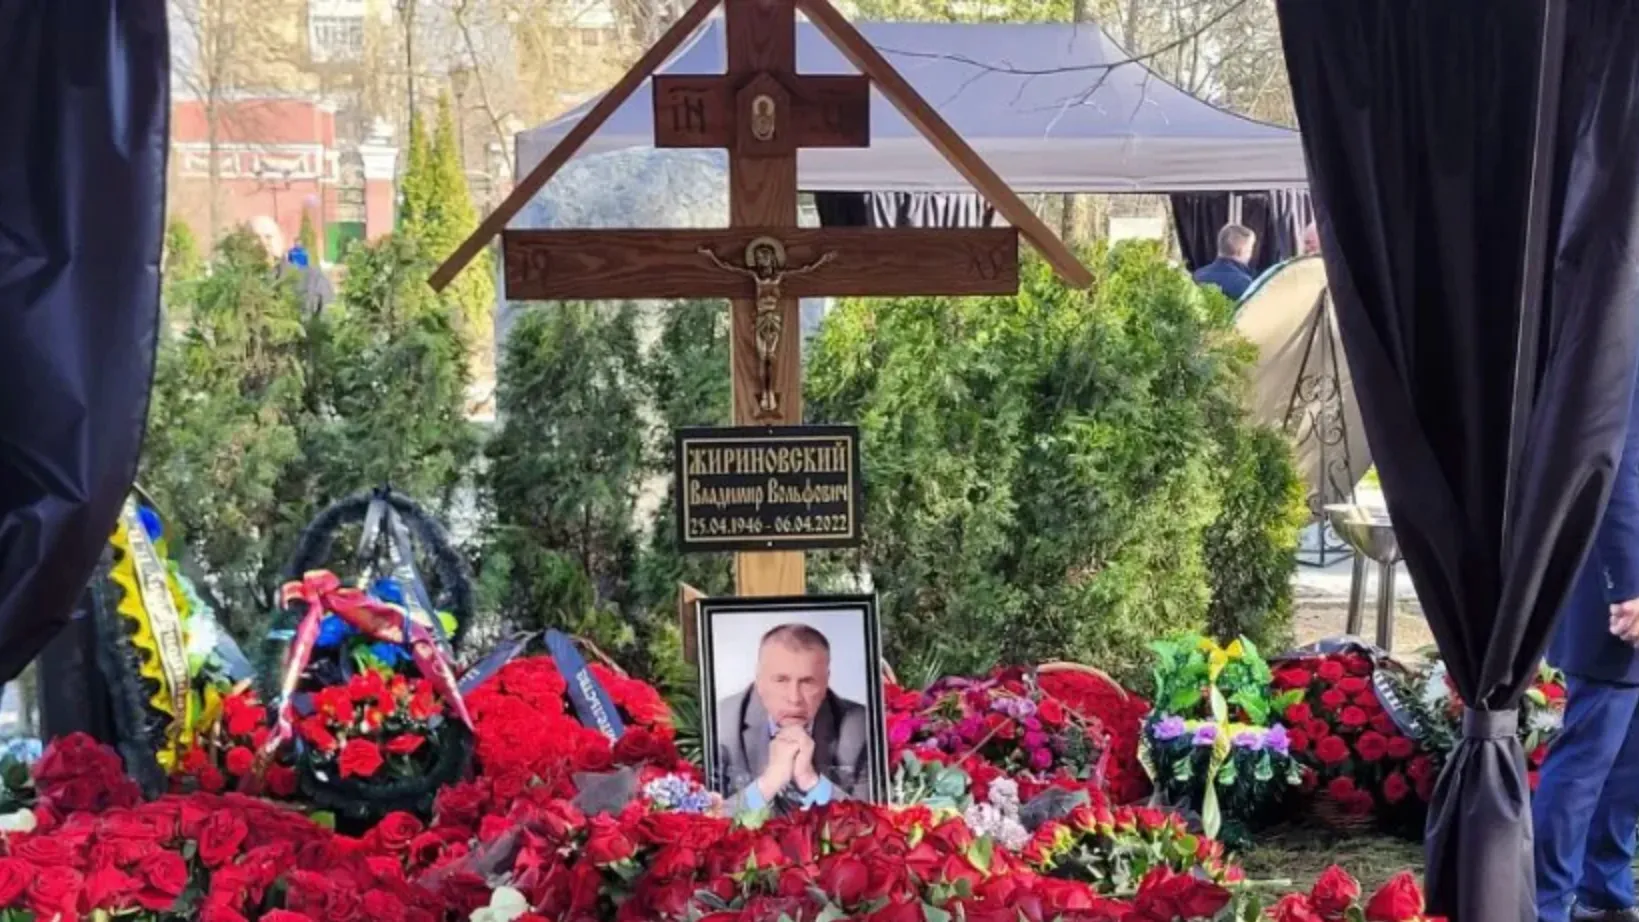 могила хворостовского на новодевичьем кладбище сегодня фото